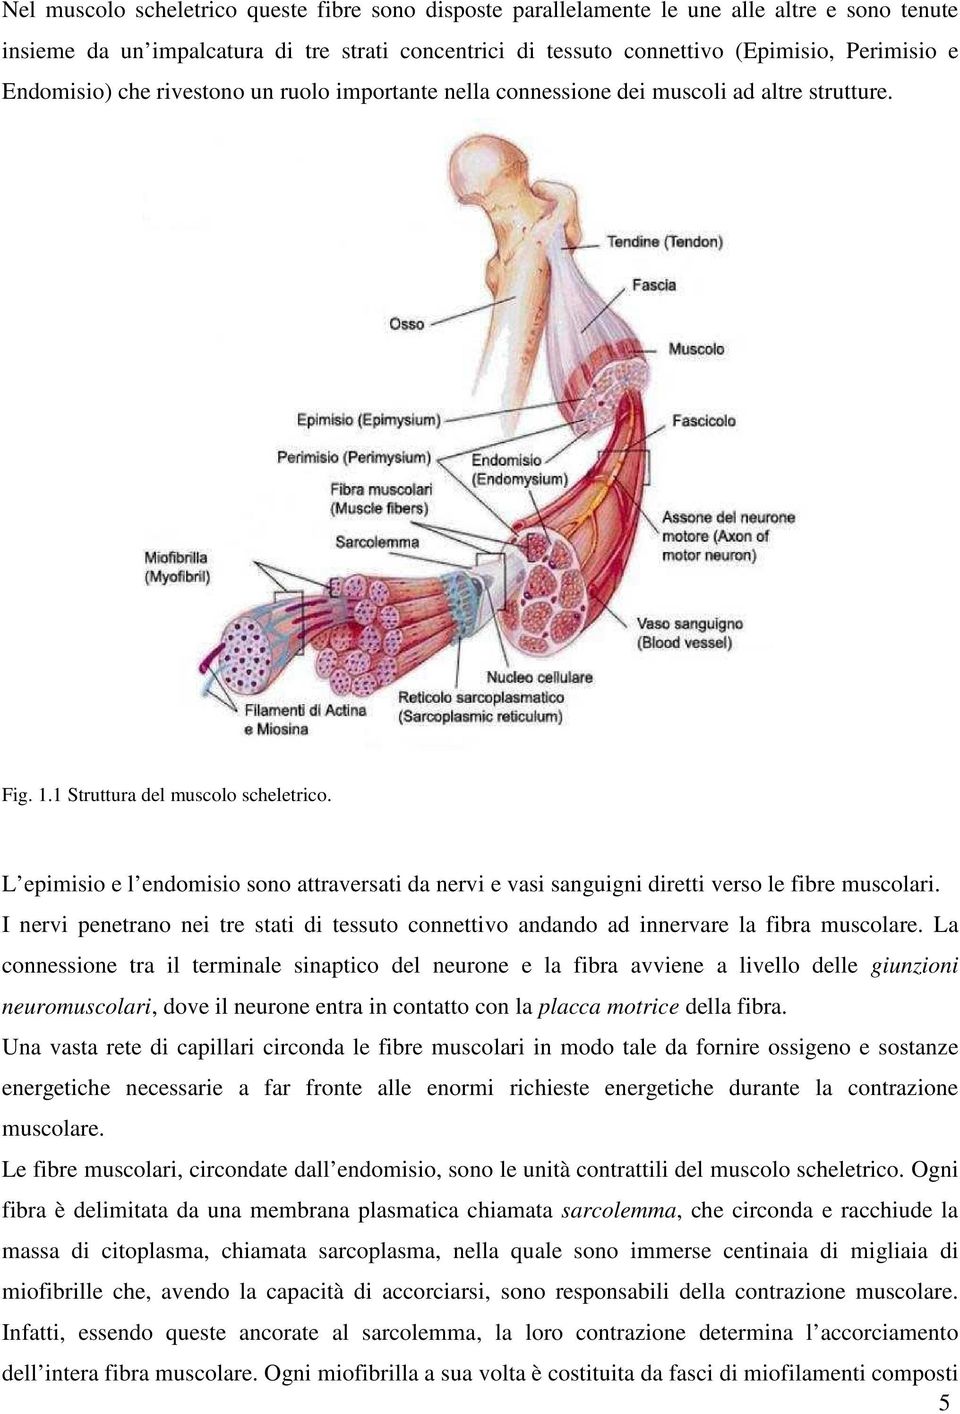 L epimisio e l endomisio sono attraversati da nervi e vasi sanguigni diretti verso le fibre muscolari. I nervi penetrano nei tre stati di tessuto connettivo andando ad innervare la fibra muscolare.